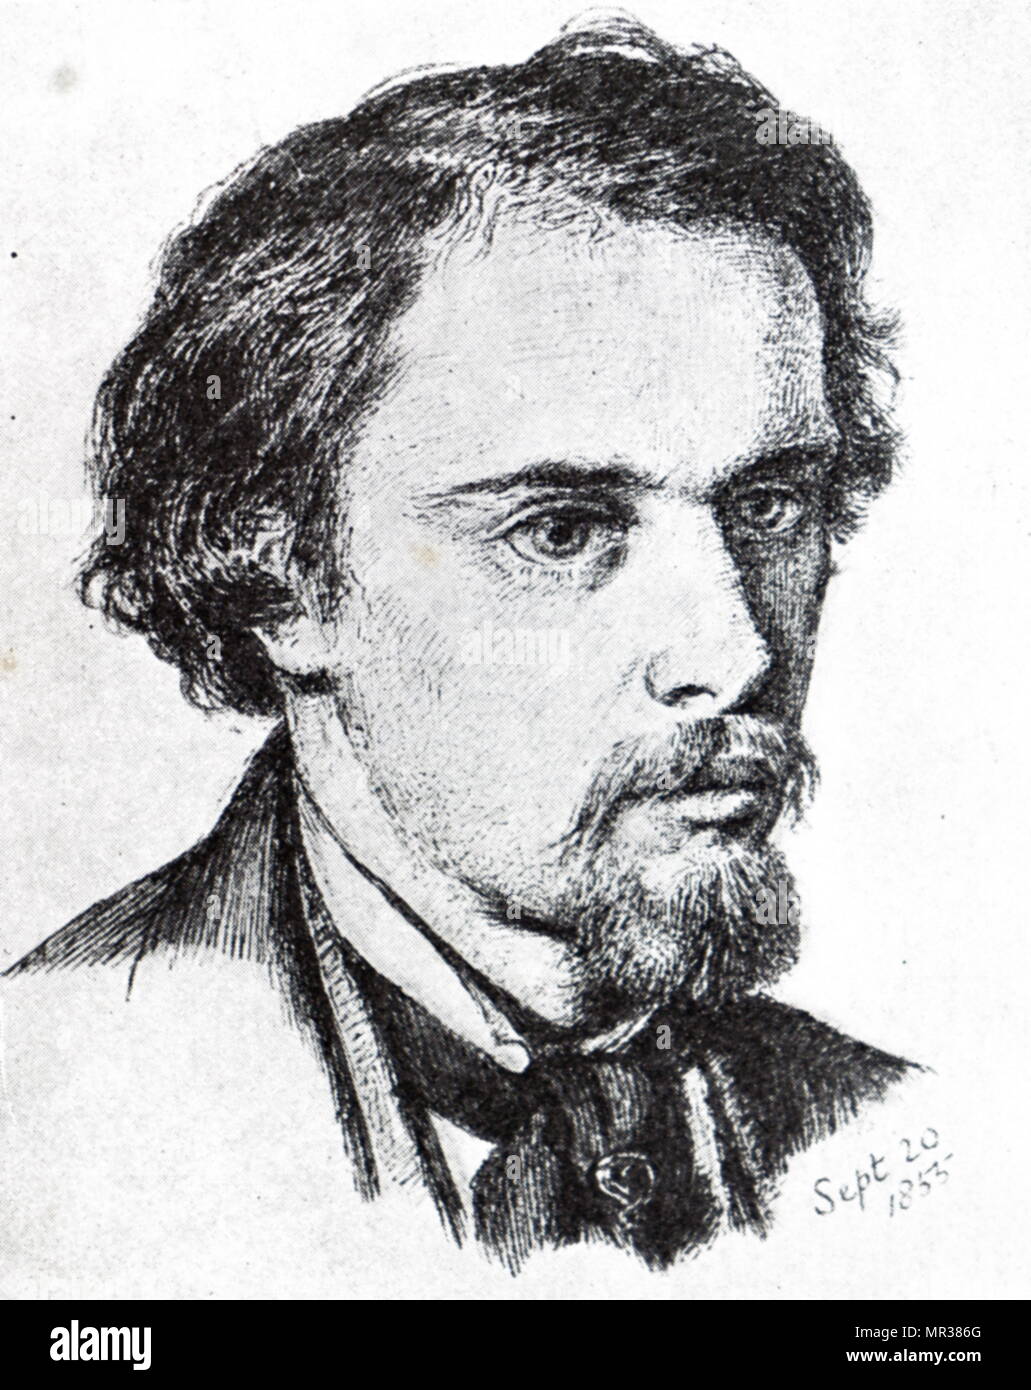 Abbildung: Darstellung: Dante Gabriel Rossetti 1828-1882) Ein britischer Dichter, Illustrator, Maler und Übersetzer. Vom 19. Jahrhundert Stockfoto